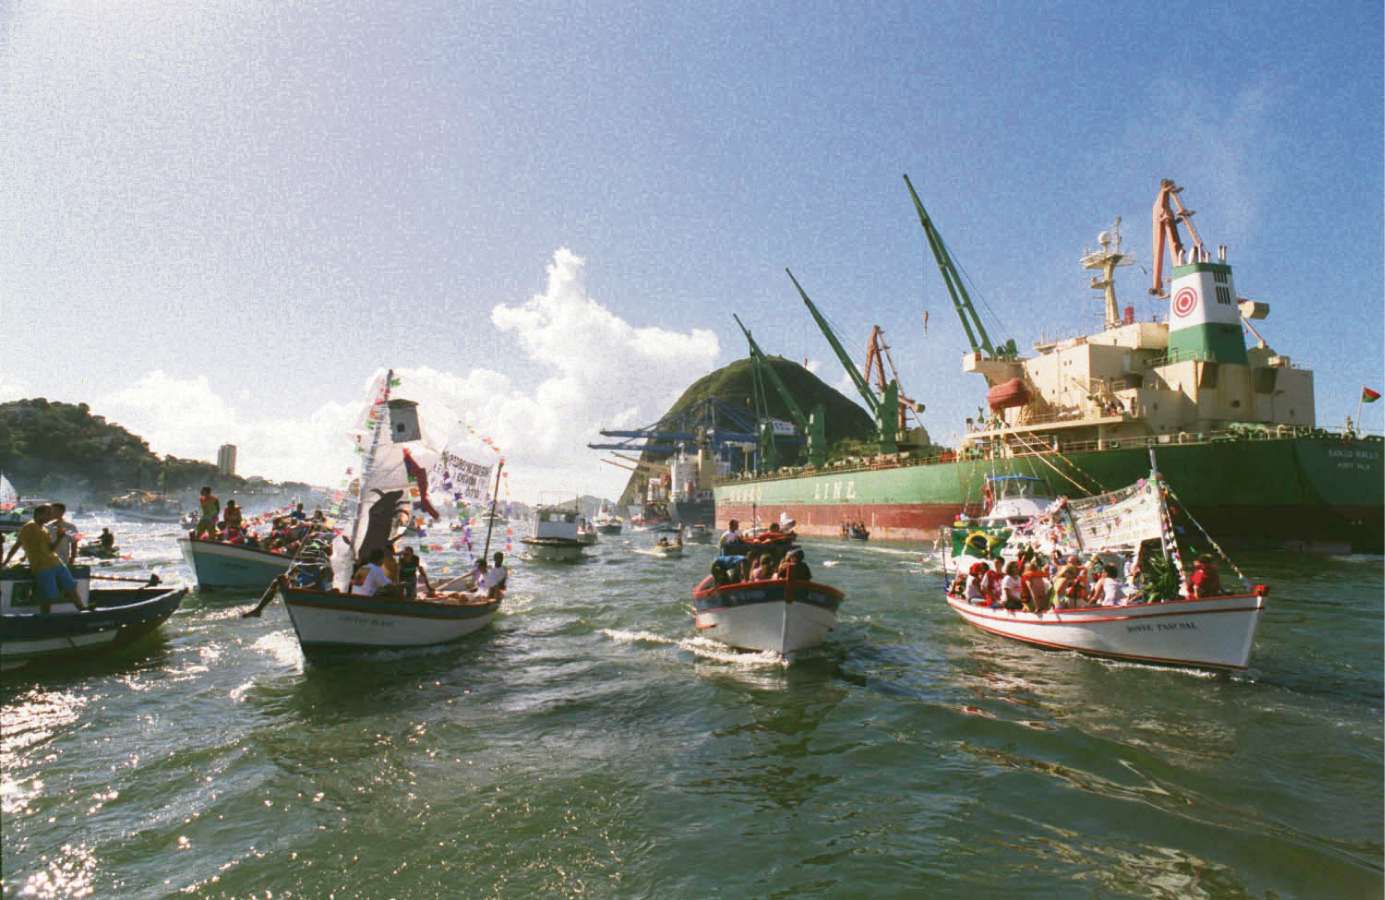 Procissão marítma em homenagem a São Pedro na Baía de Vitória em 2004